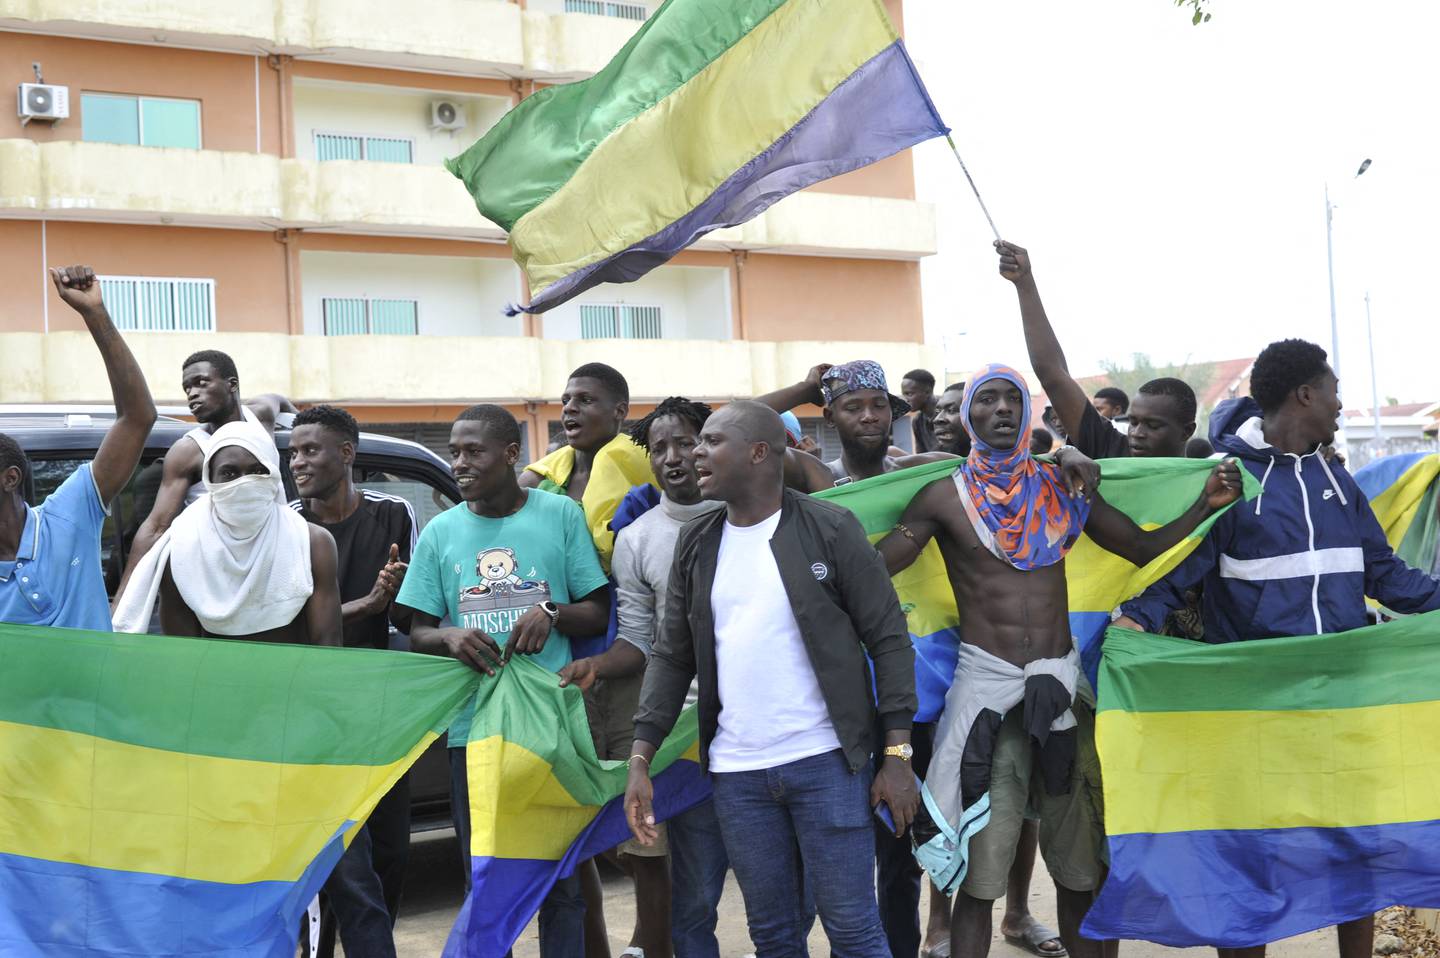 Habitantes ondeando banderas nacionales de Gabón celebran en Libreville este miércoles luego de que oficiales militares gaboneses anunciaran en televisión el "fin del régimen actual", rechazando los resultados electorales que habían concedido otro mandato al  presidente Ali Bongo.